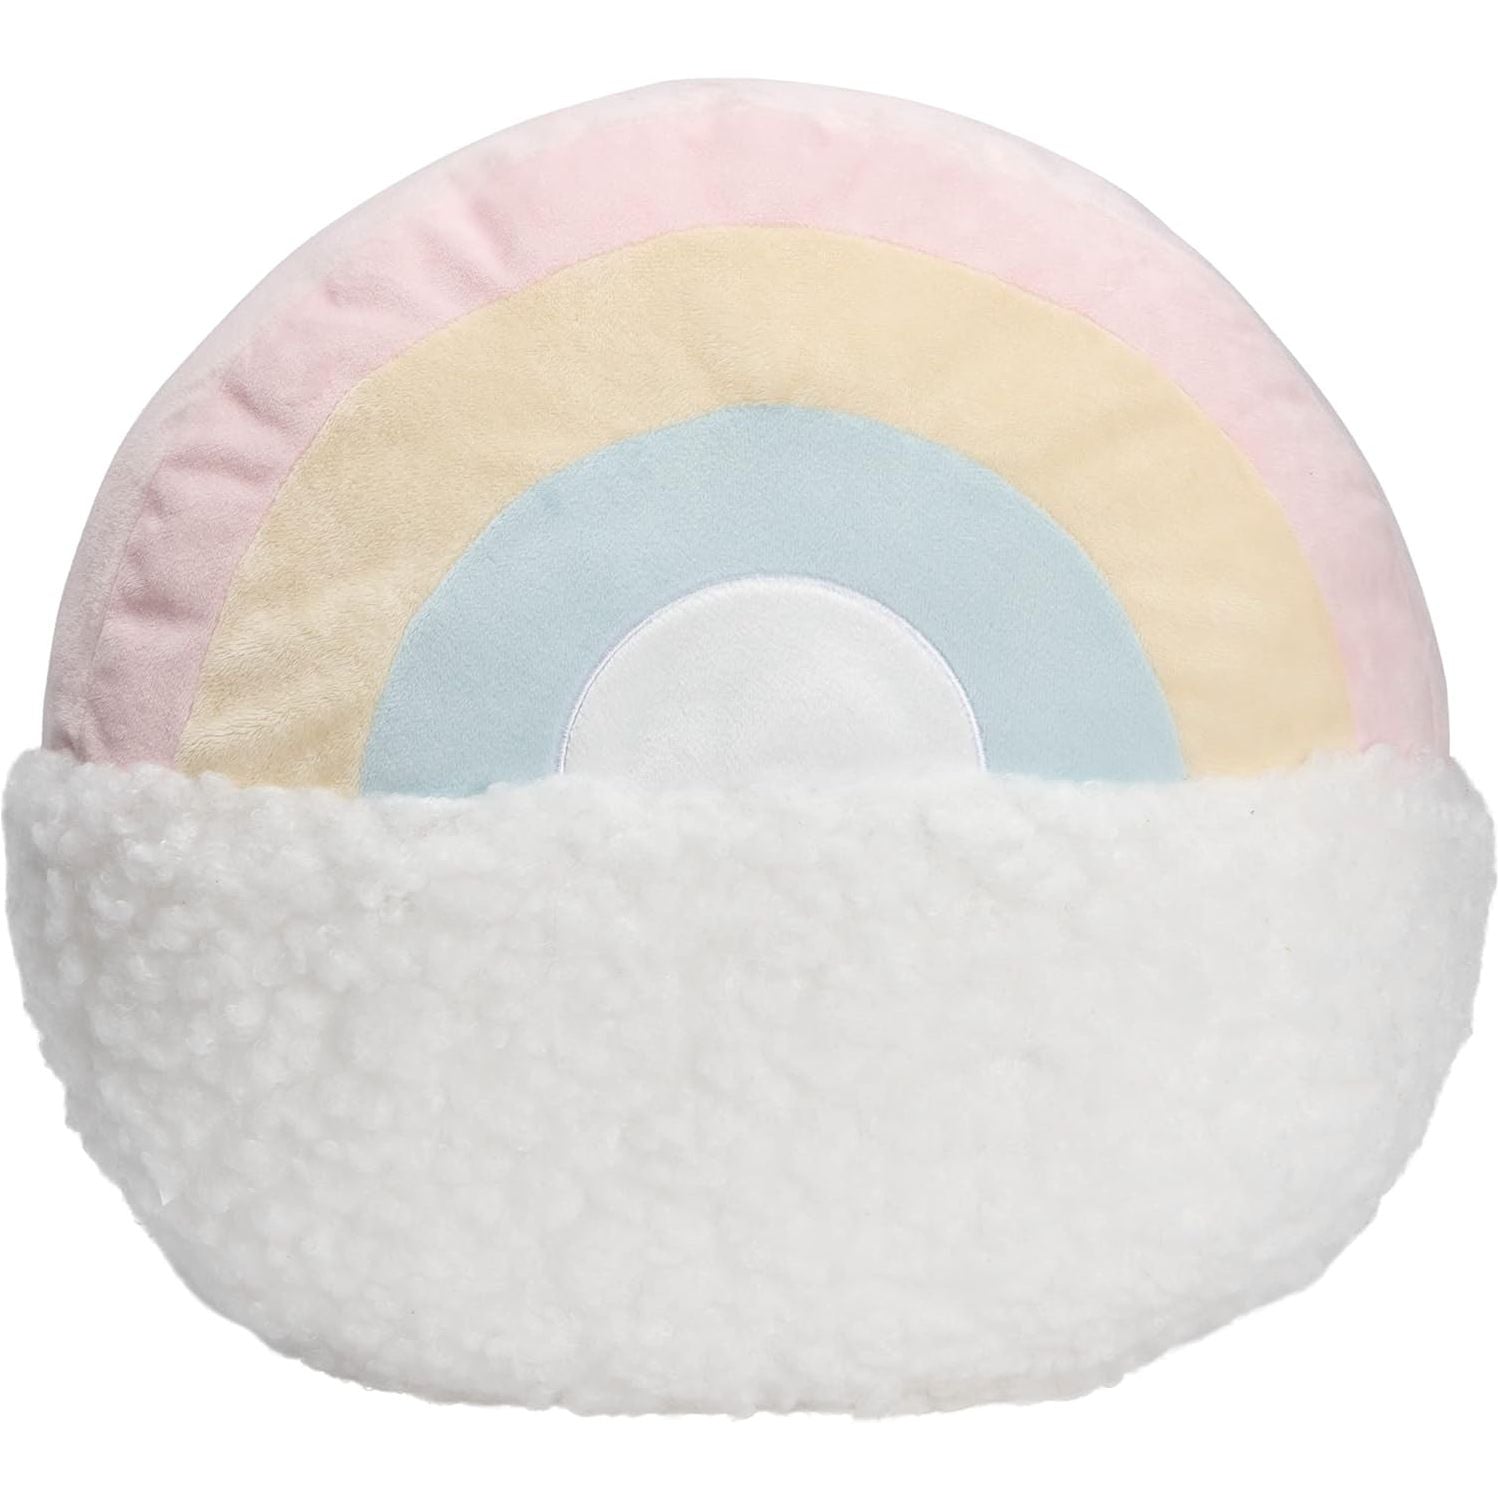 Gund Pusheen Rainbow super fluffy 13 inch pillow